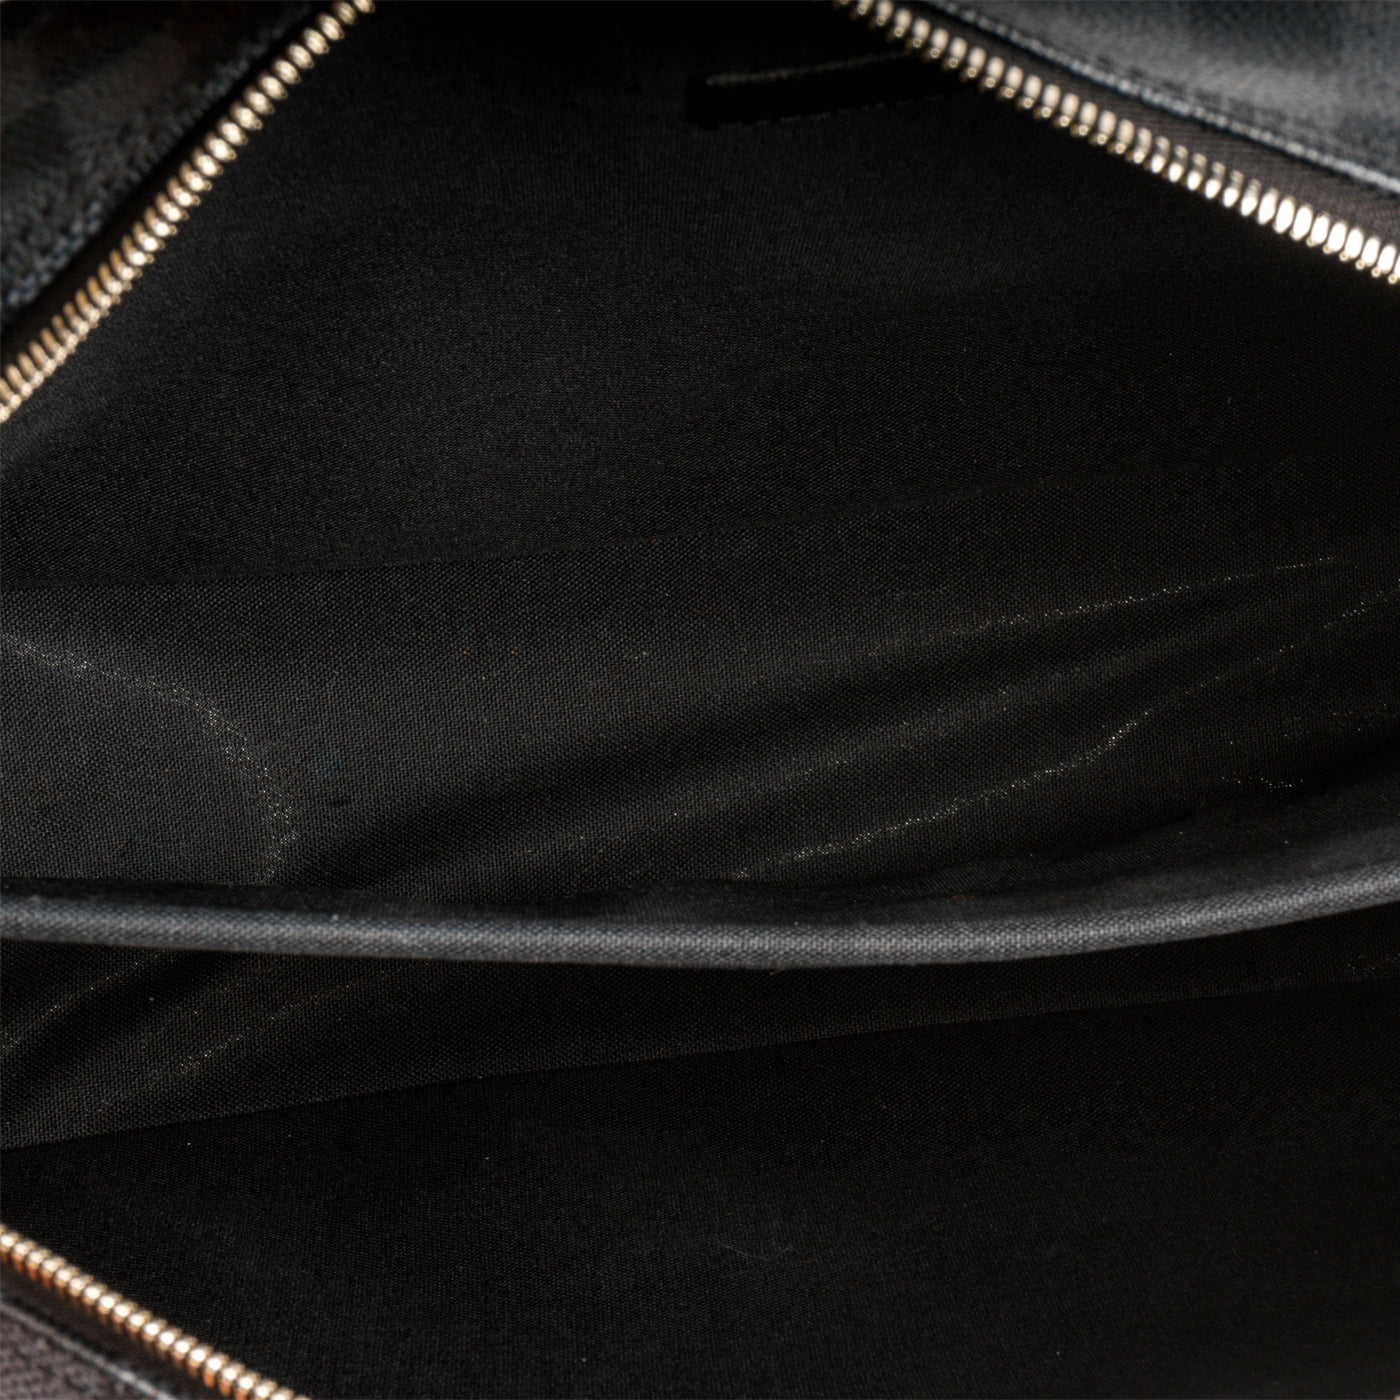 Louis Vuitton Damier Graphite Icare Laptop Bag - Black Laptop Covers &  Cases, Technology - LOU167259